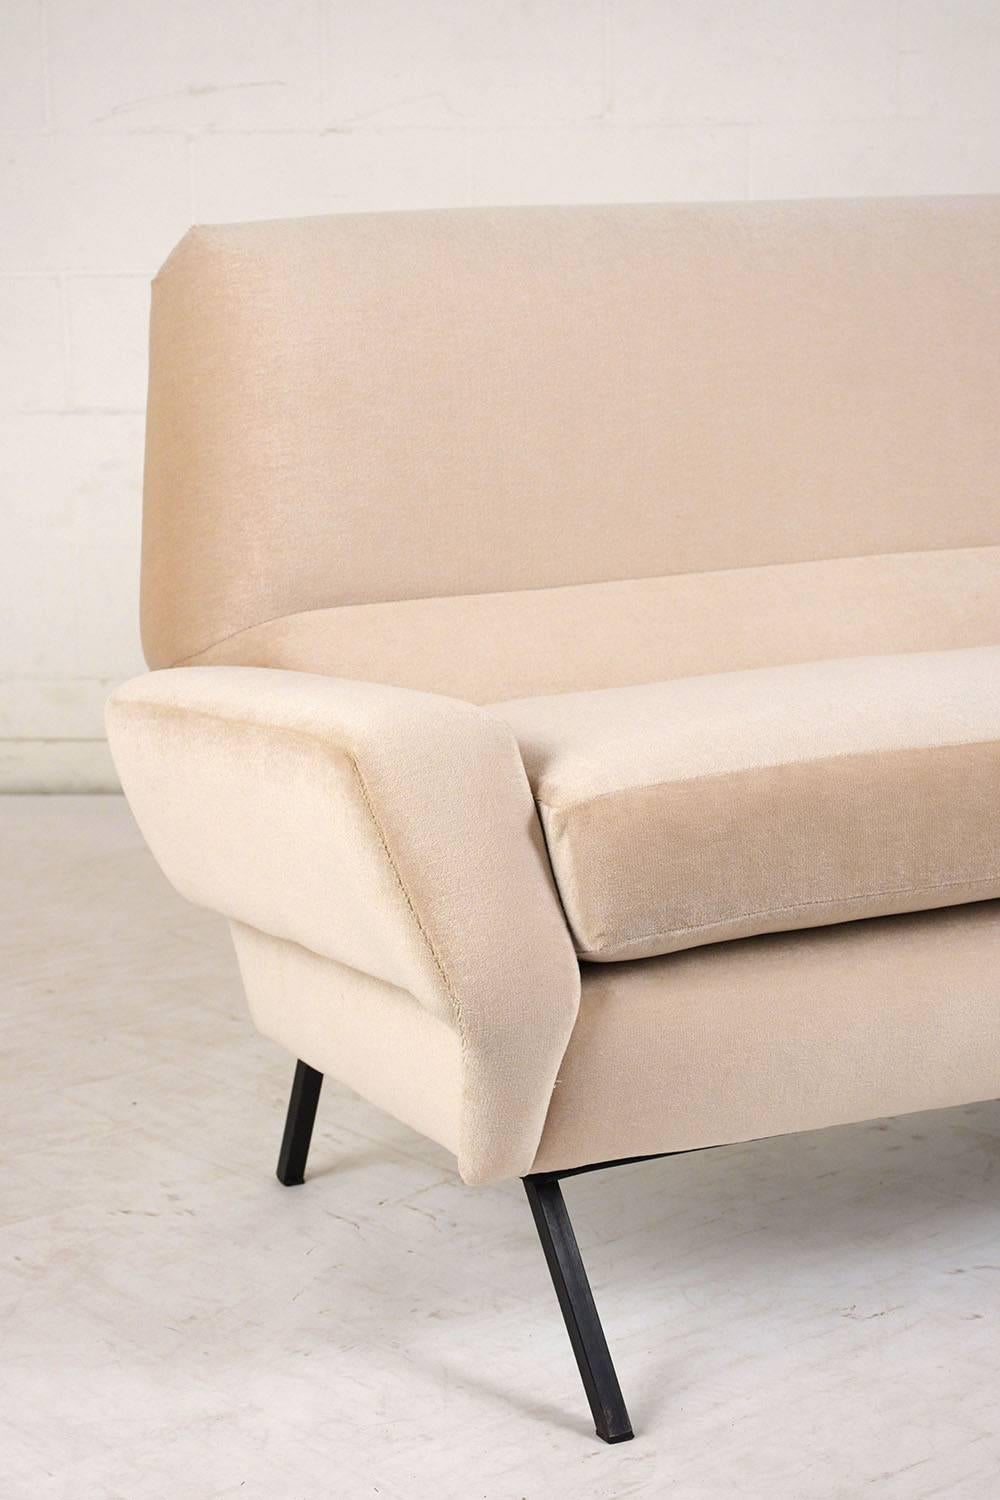 Italian Mid-Century Modern Sofa 1